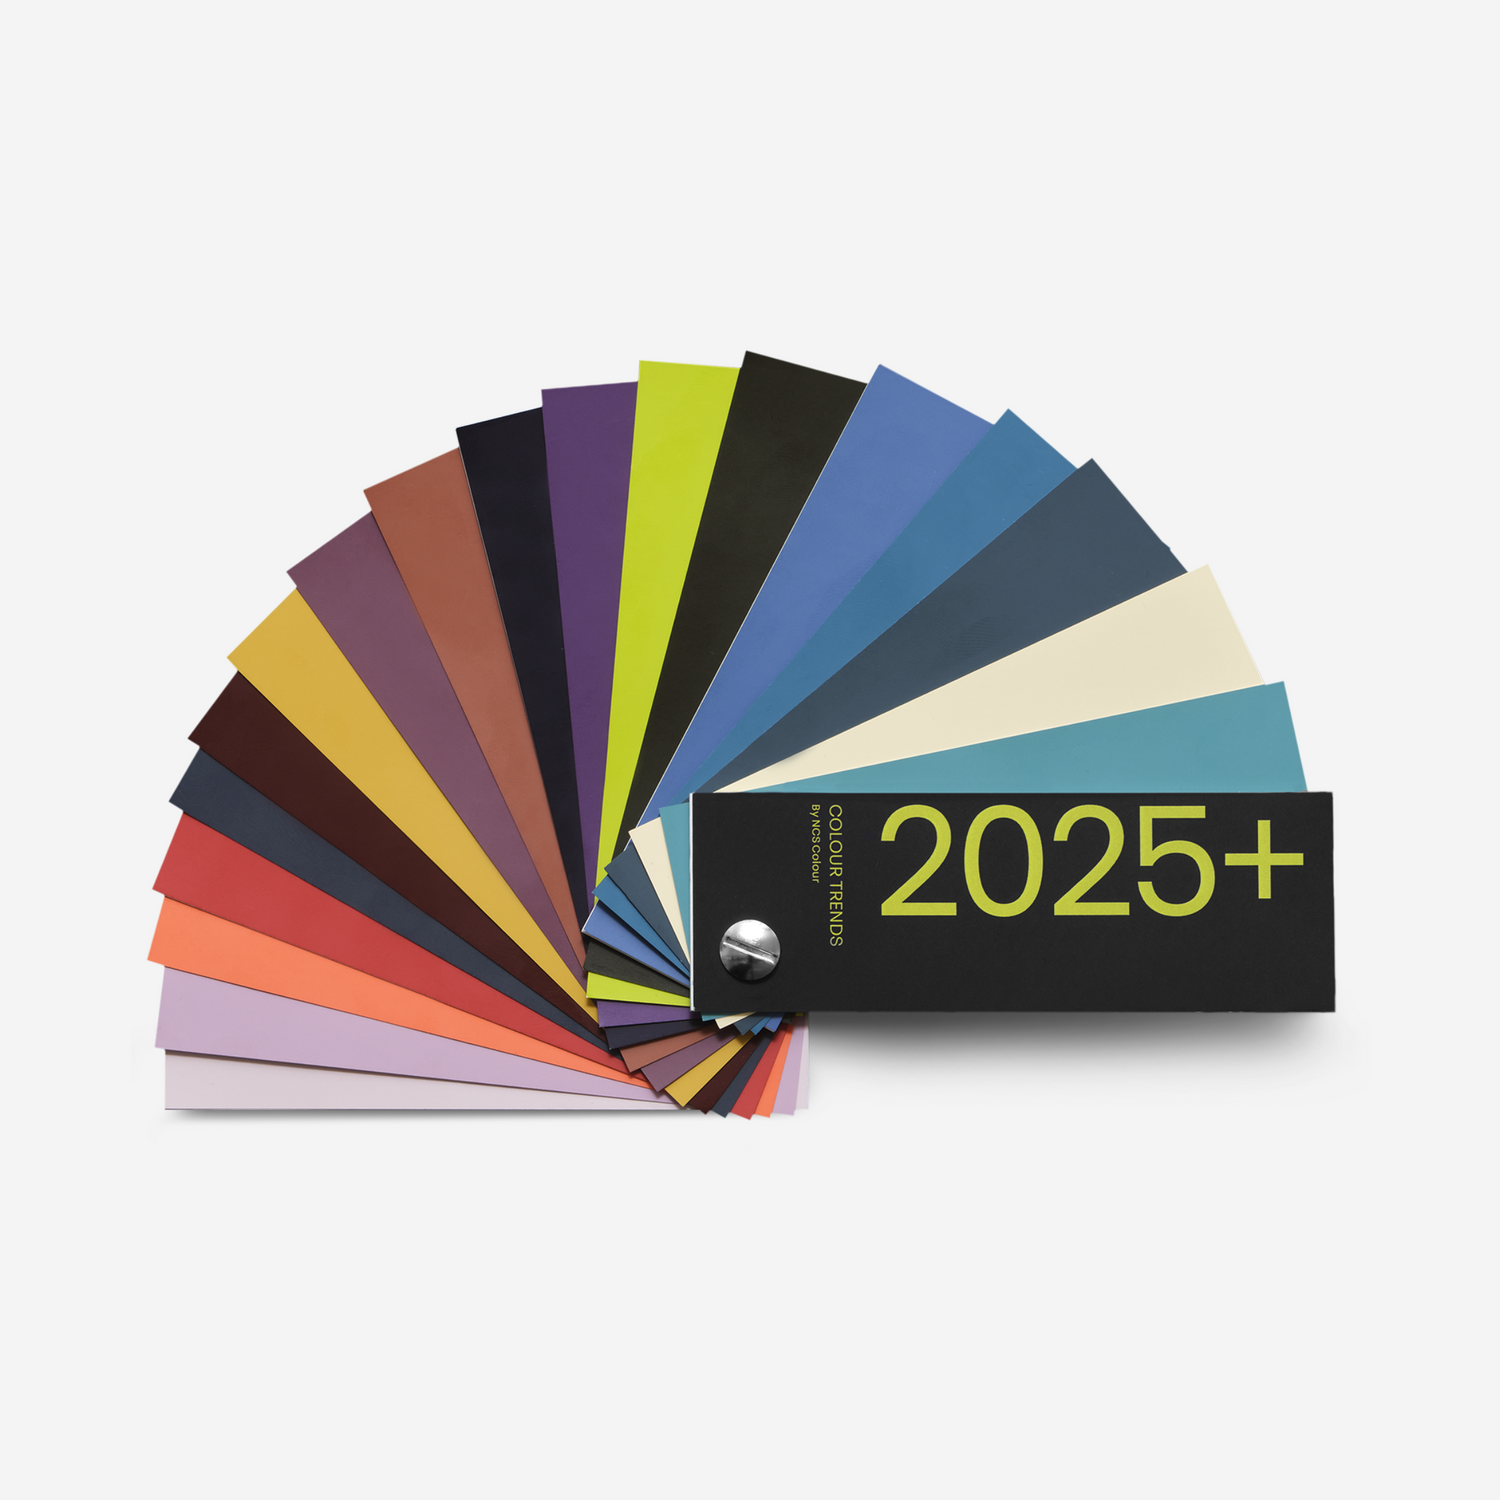 NCS Colour Trends 2025+ Fandeck